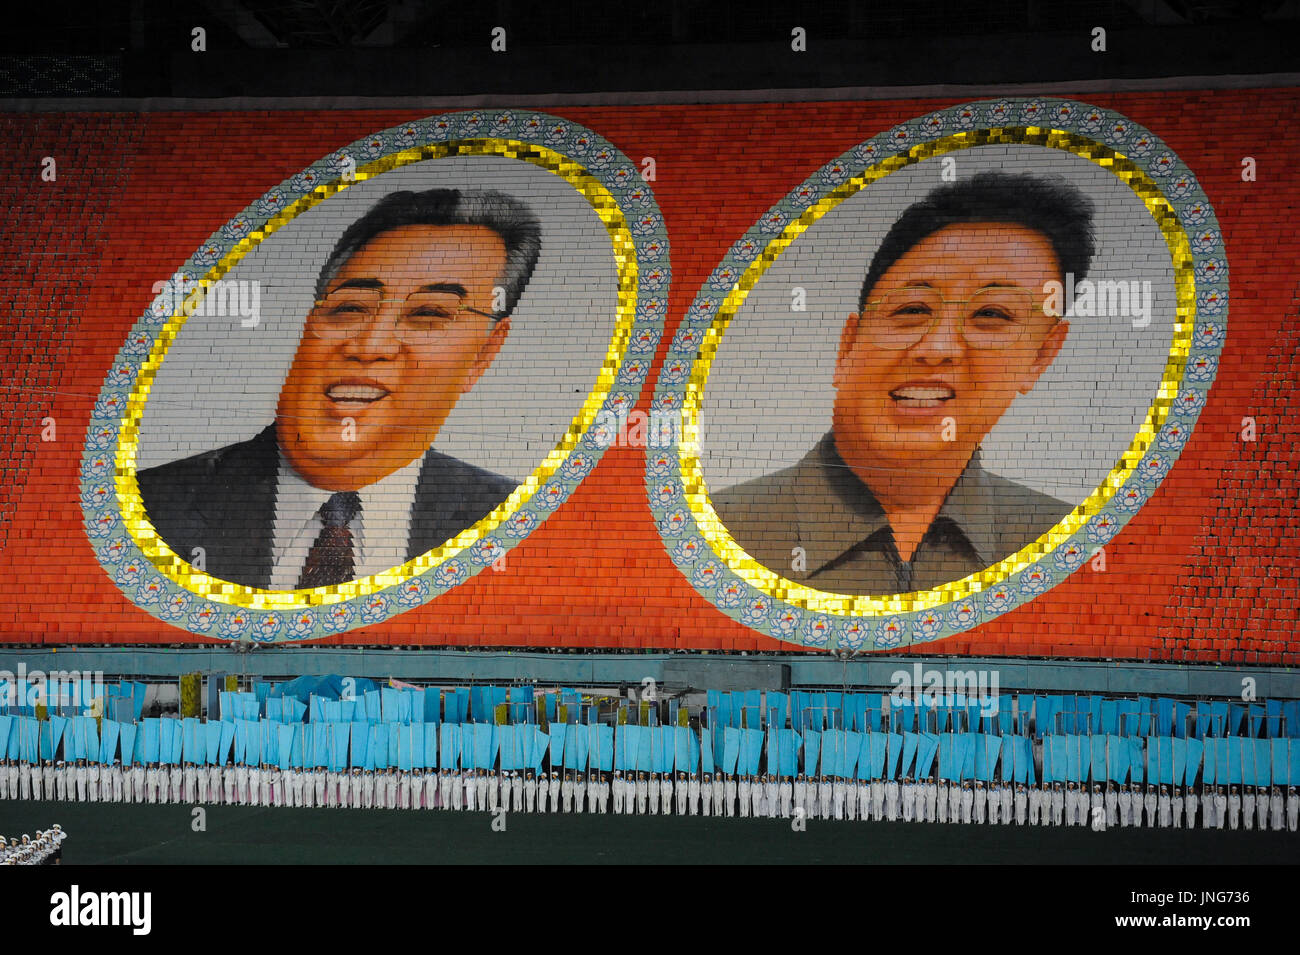 08.08.2012, Pyongyang, Nordkorea, Asien - die Porträts der verstorbenen nordkoreanischen Führer das sung und Kim Jong-Il als ein riesiges Mosaik abgebildet sind. Stockfoto